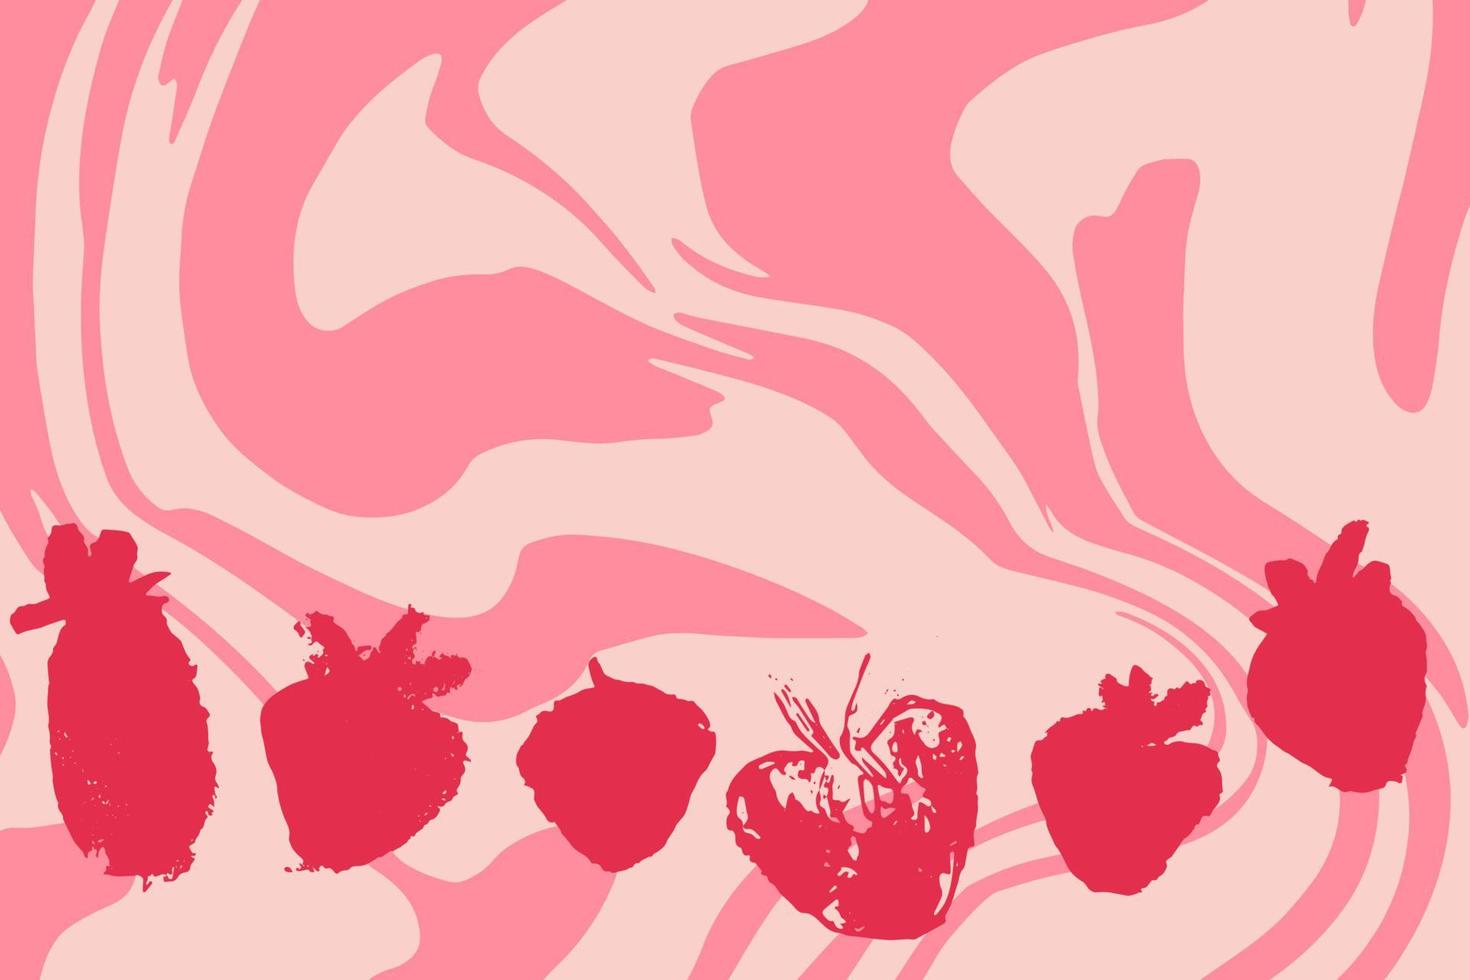 tarjeta con un conjunto de fresas abstractas dibujadas a mano sobre fondo rosa, remolino de leche de frutas. vector